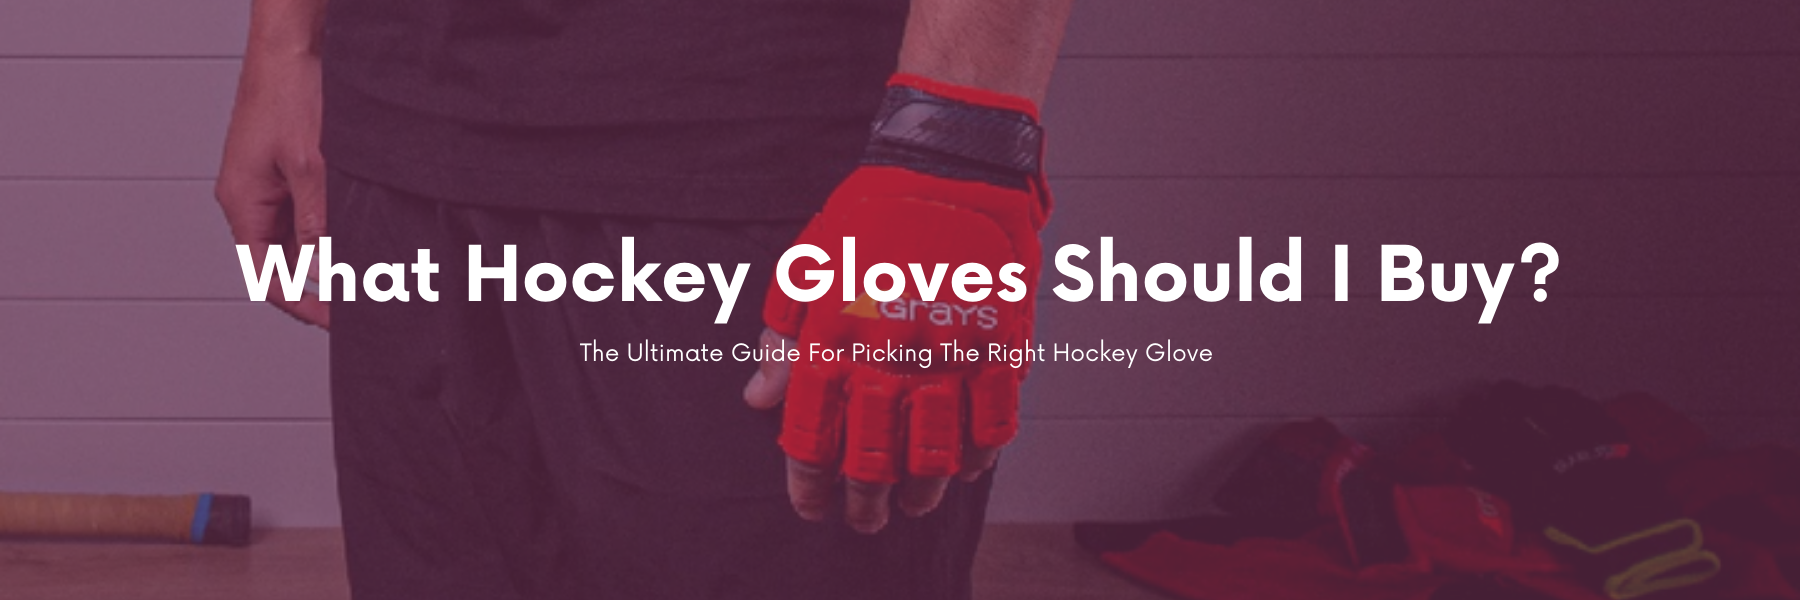 Should I Buy Hockey Gloves? - Total Hockey